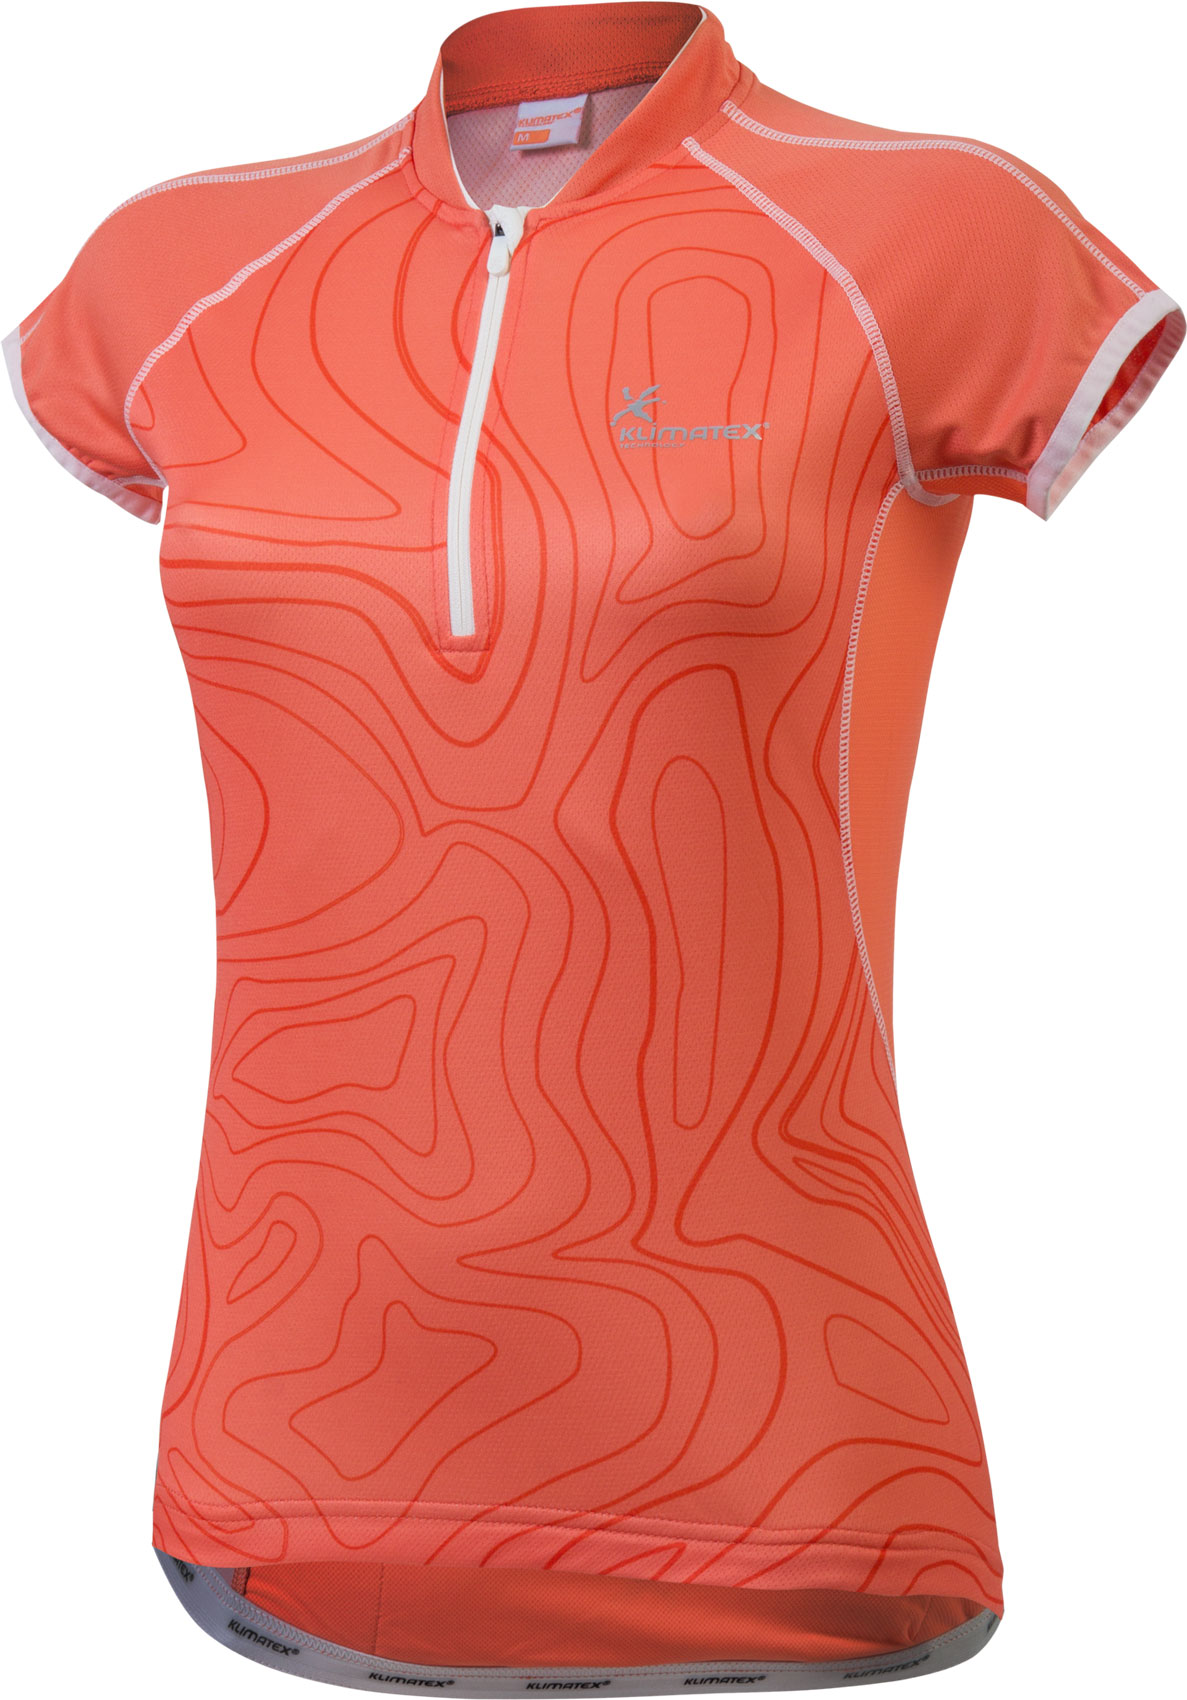 Дамска велосипедна тениска със  сумблимачен  печат